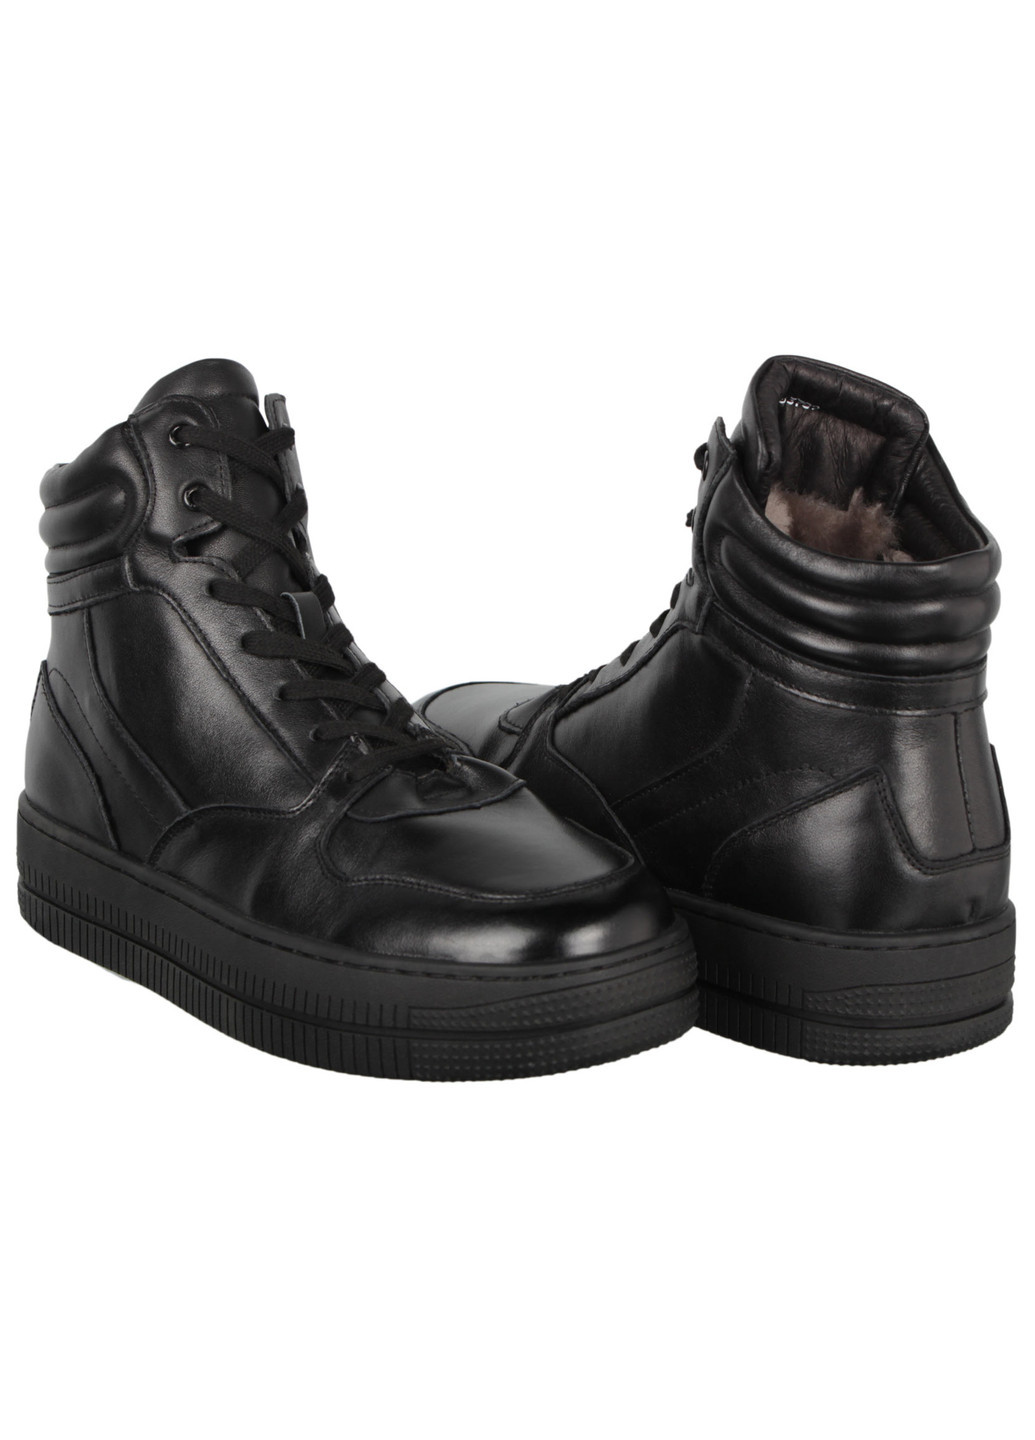 Черные зимние мужские зимние ботинки 197523 Lifexpert